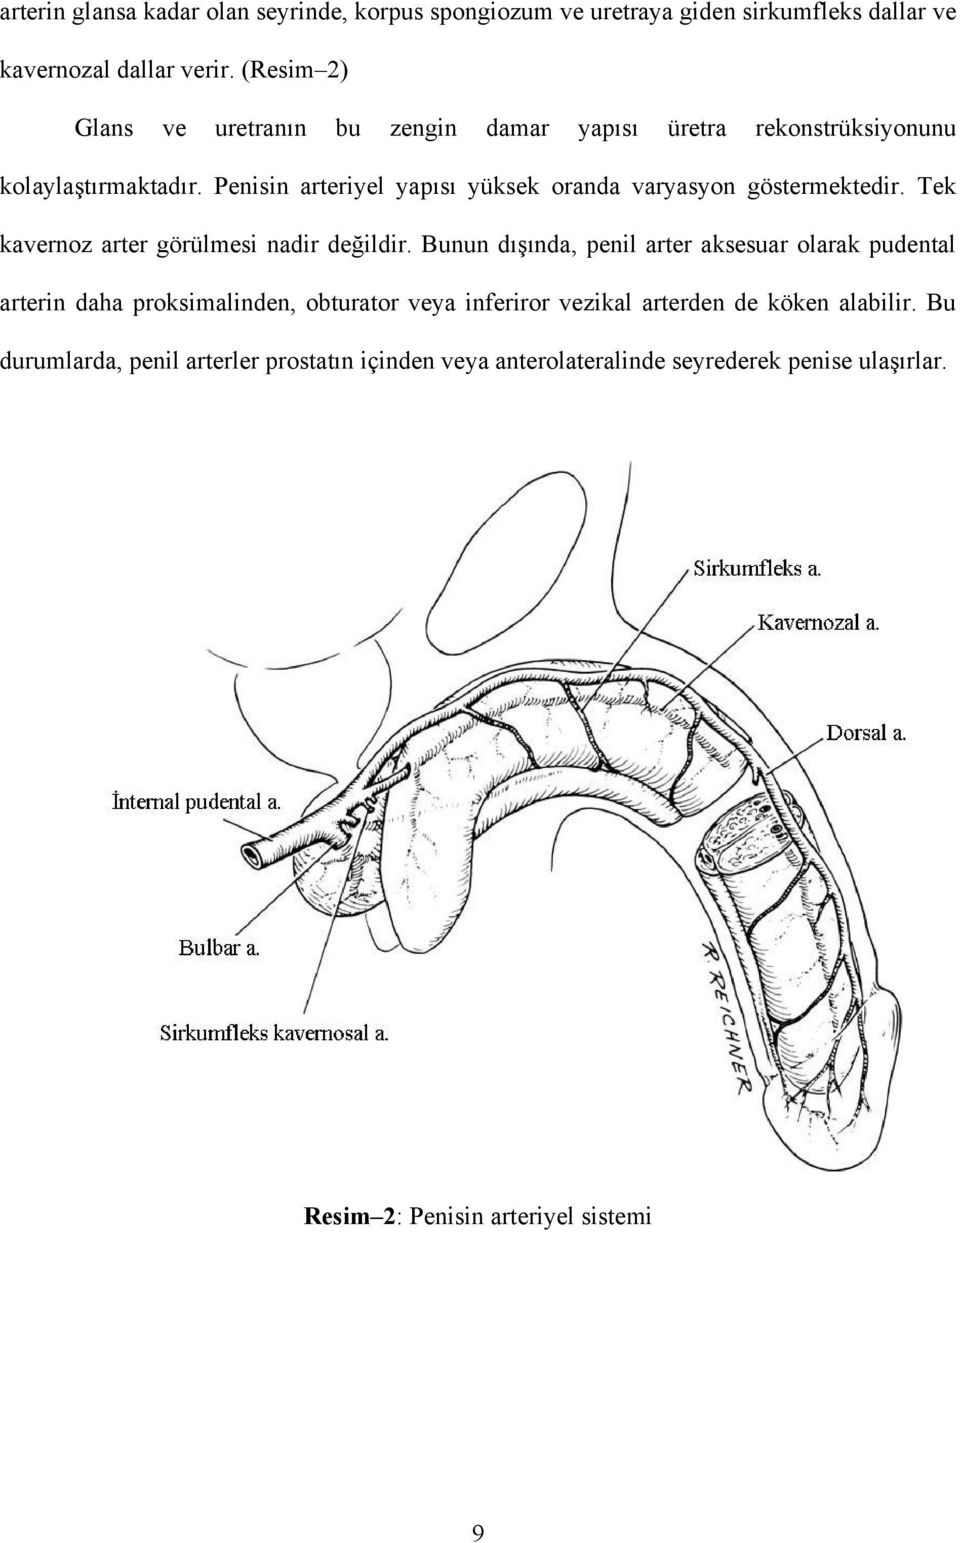 Penisin arteriyel yapısı yüksek oranda varyasyon göstermektedir. Tek kavernoz arter görülmesi nadir değildir.